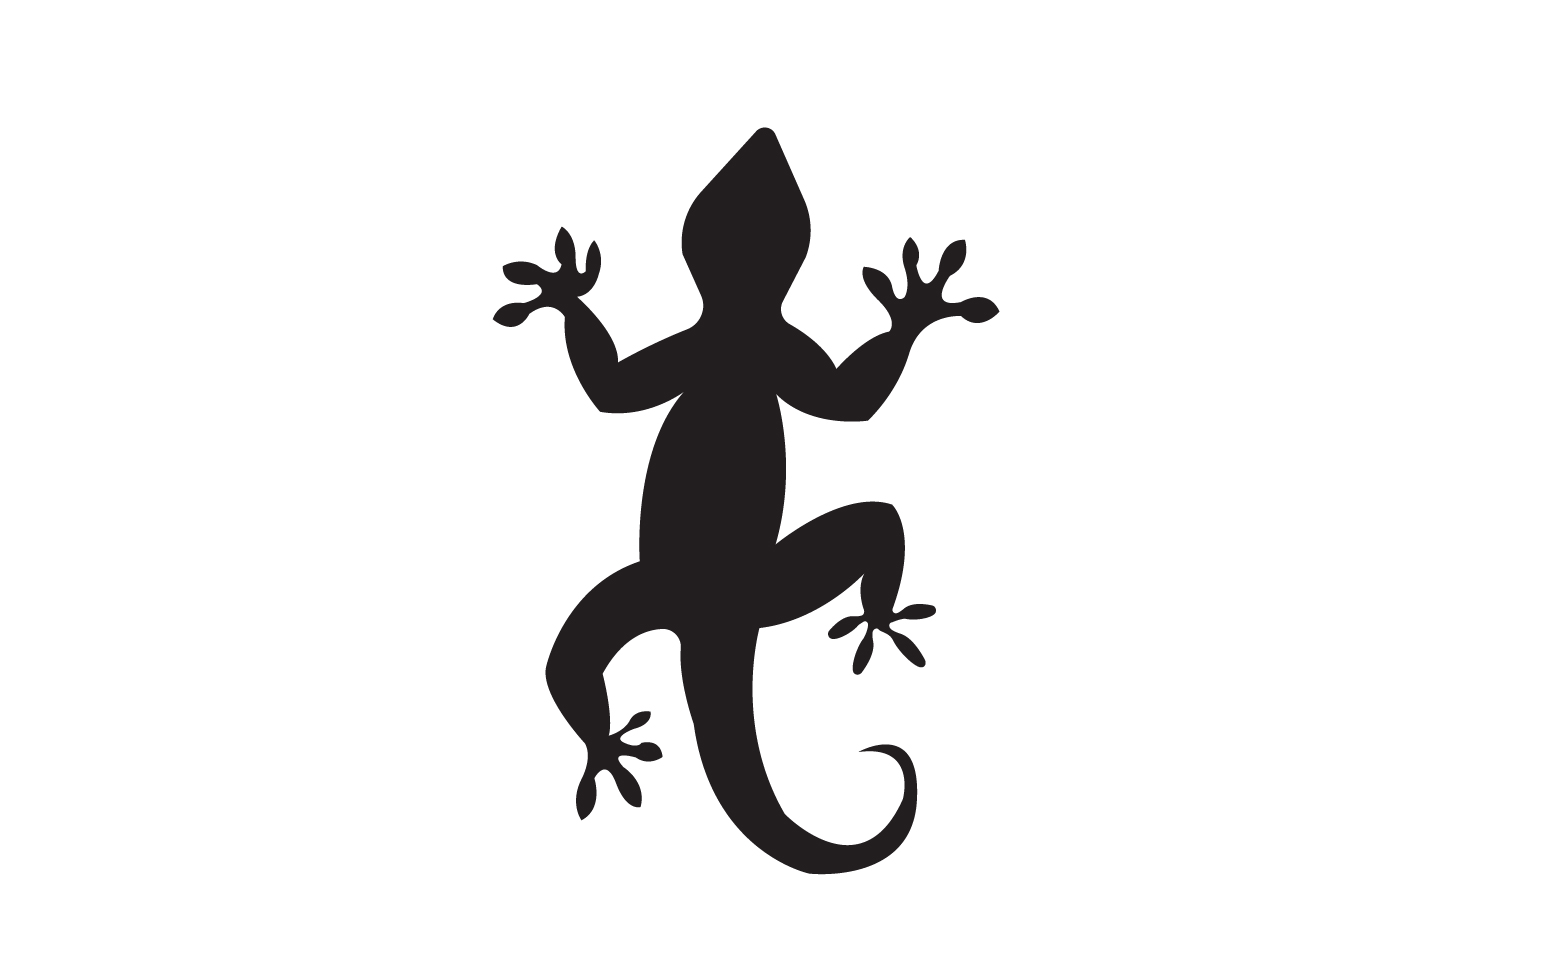 Lizard chameleon home lizard logo v9